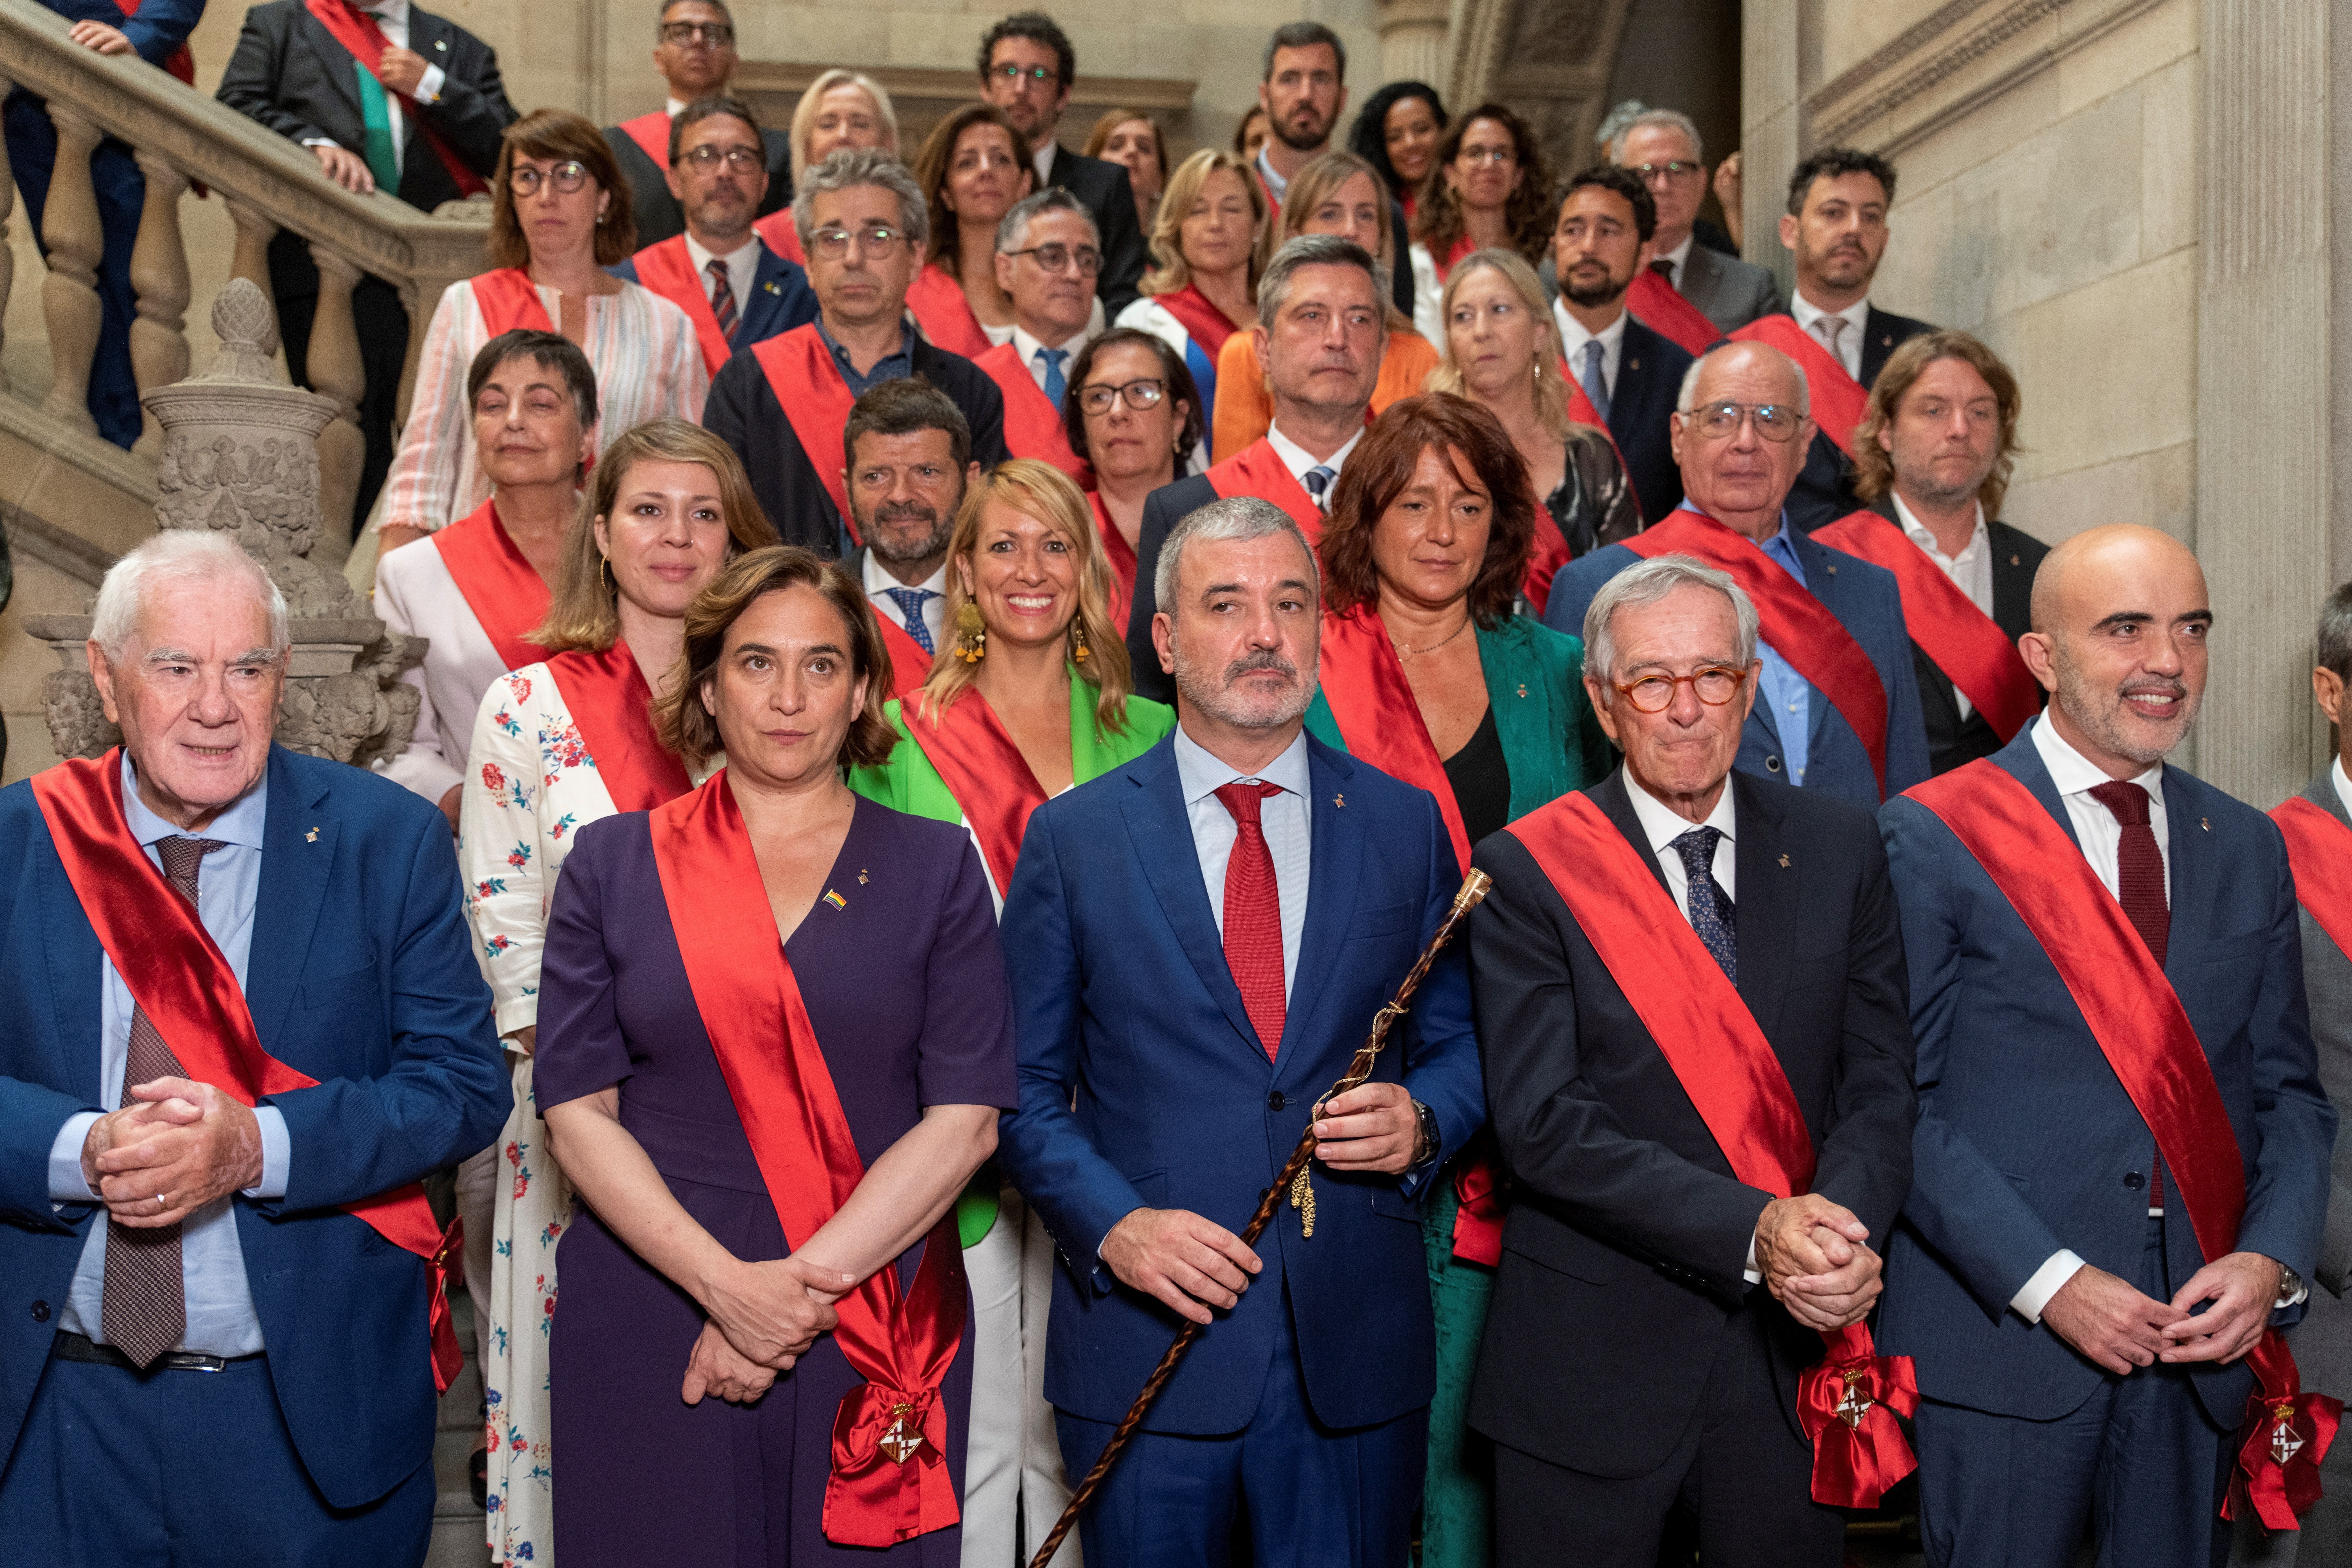 Retrato de los concejales de Barcelona: más experiencia en la empresa pública que en la privada